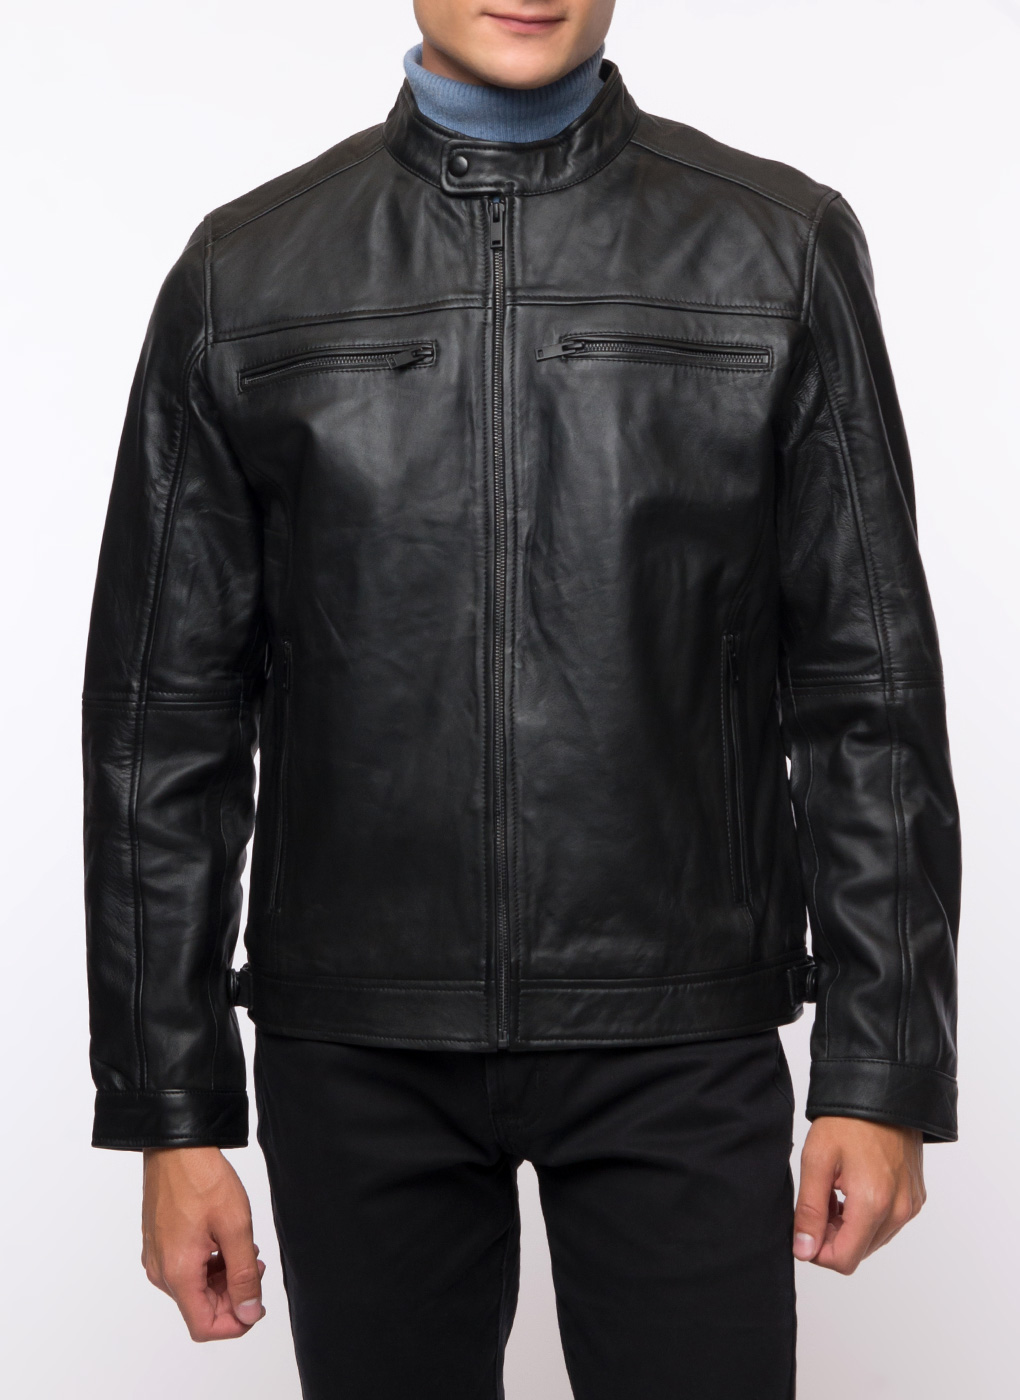 Кожаная куртка мужская Каляев 62651 черная 58 RU